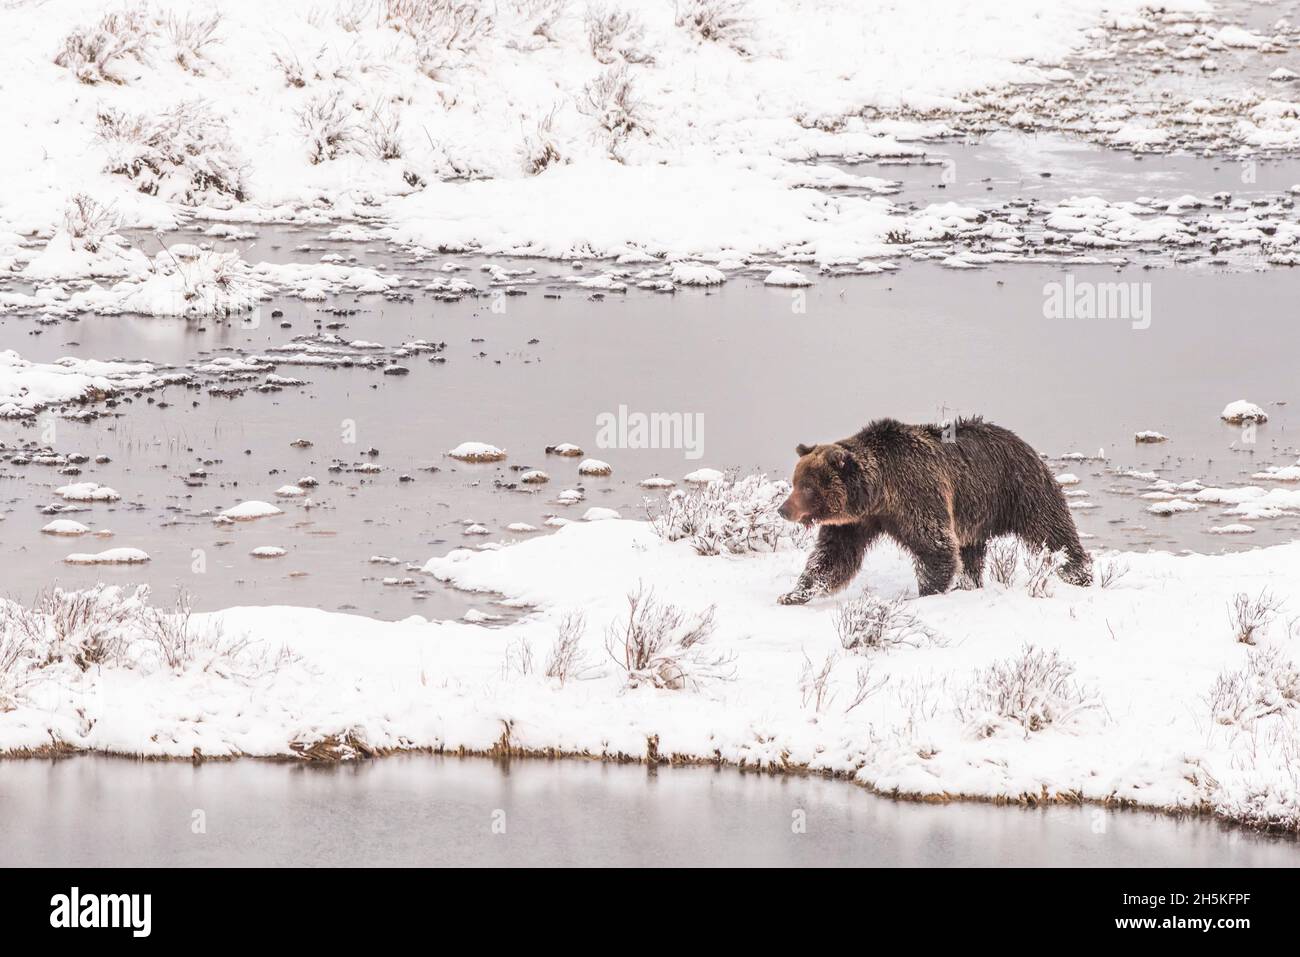 Ours brun (Ursus arctos) marchant le long de la côte enneigée en hiver à la recherche de nourriture; Yellowstone National Park, États-Unis d'Amérique Banque D'Images